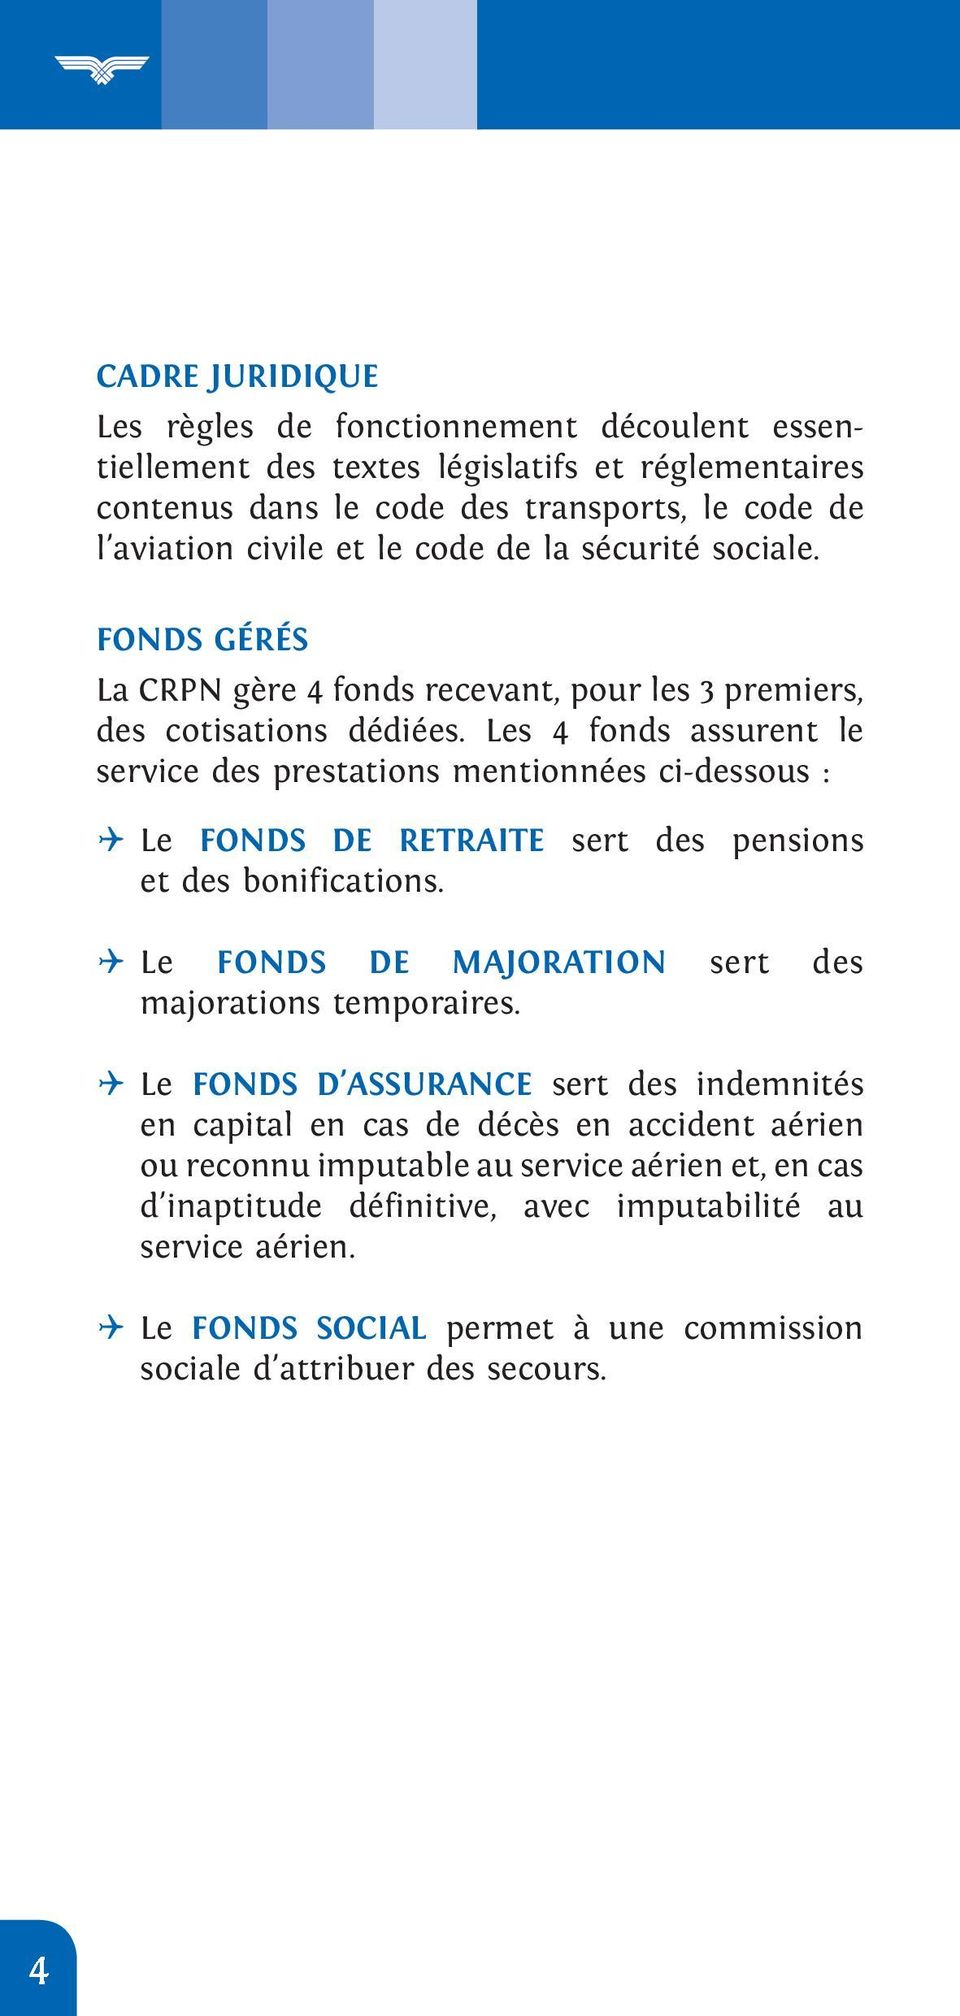 Les 4 fonds assurent le service des prestations mentionnées ci-dessous : Le FONDS DE RETRAITE sert des pensions et des bonifications. Le FONDS DE MAJORATION sert des majorations temporaires.